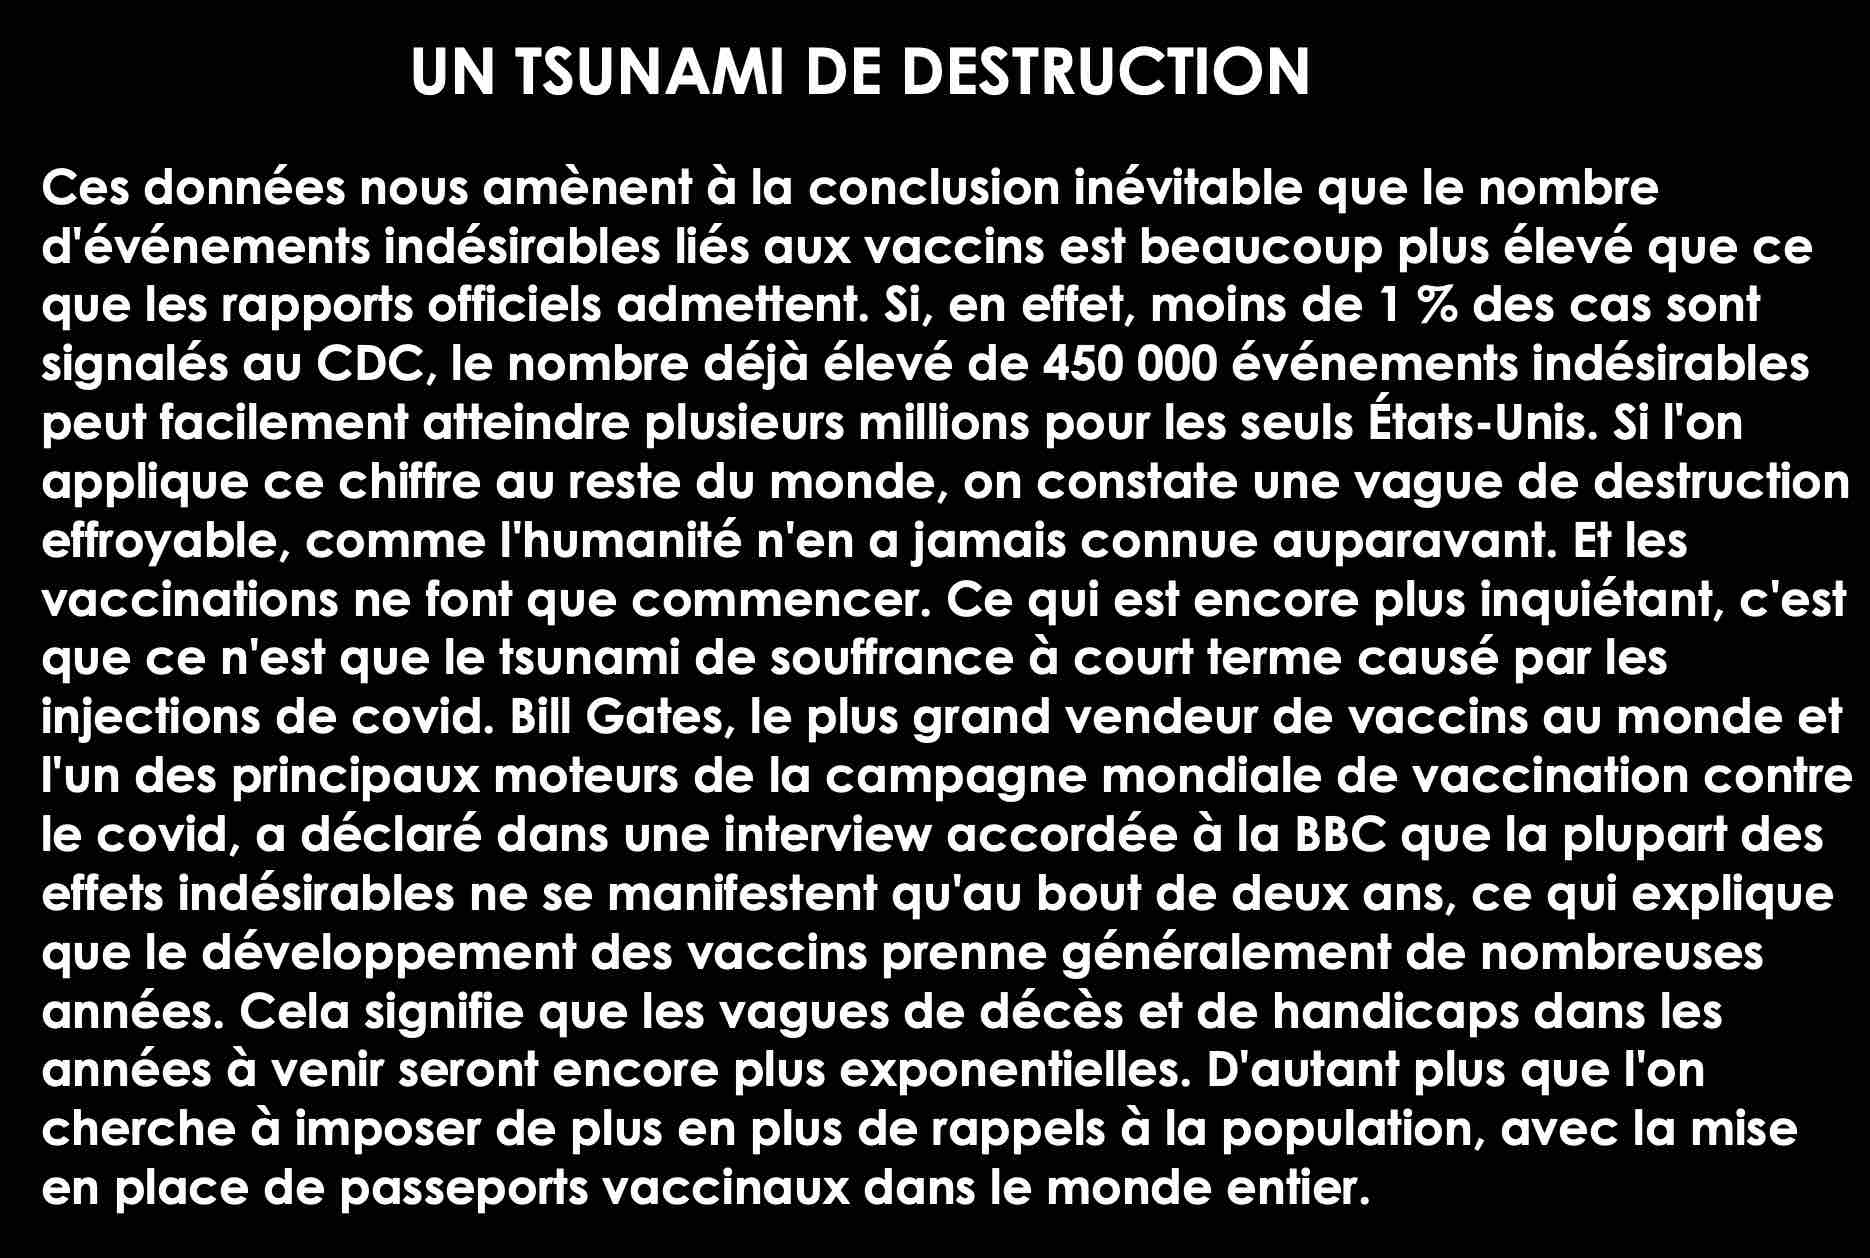 vaccins-covid-un-tsunami-de-destruction.jpg